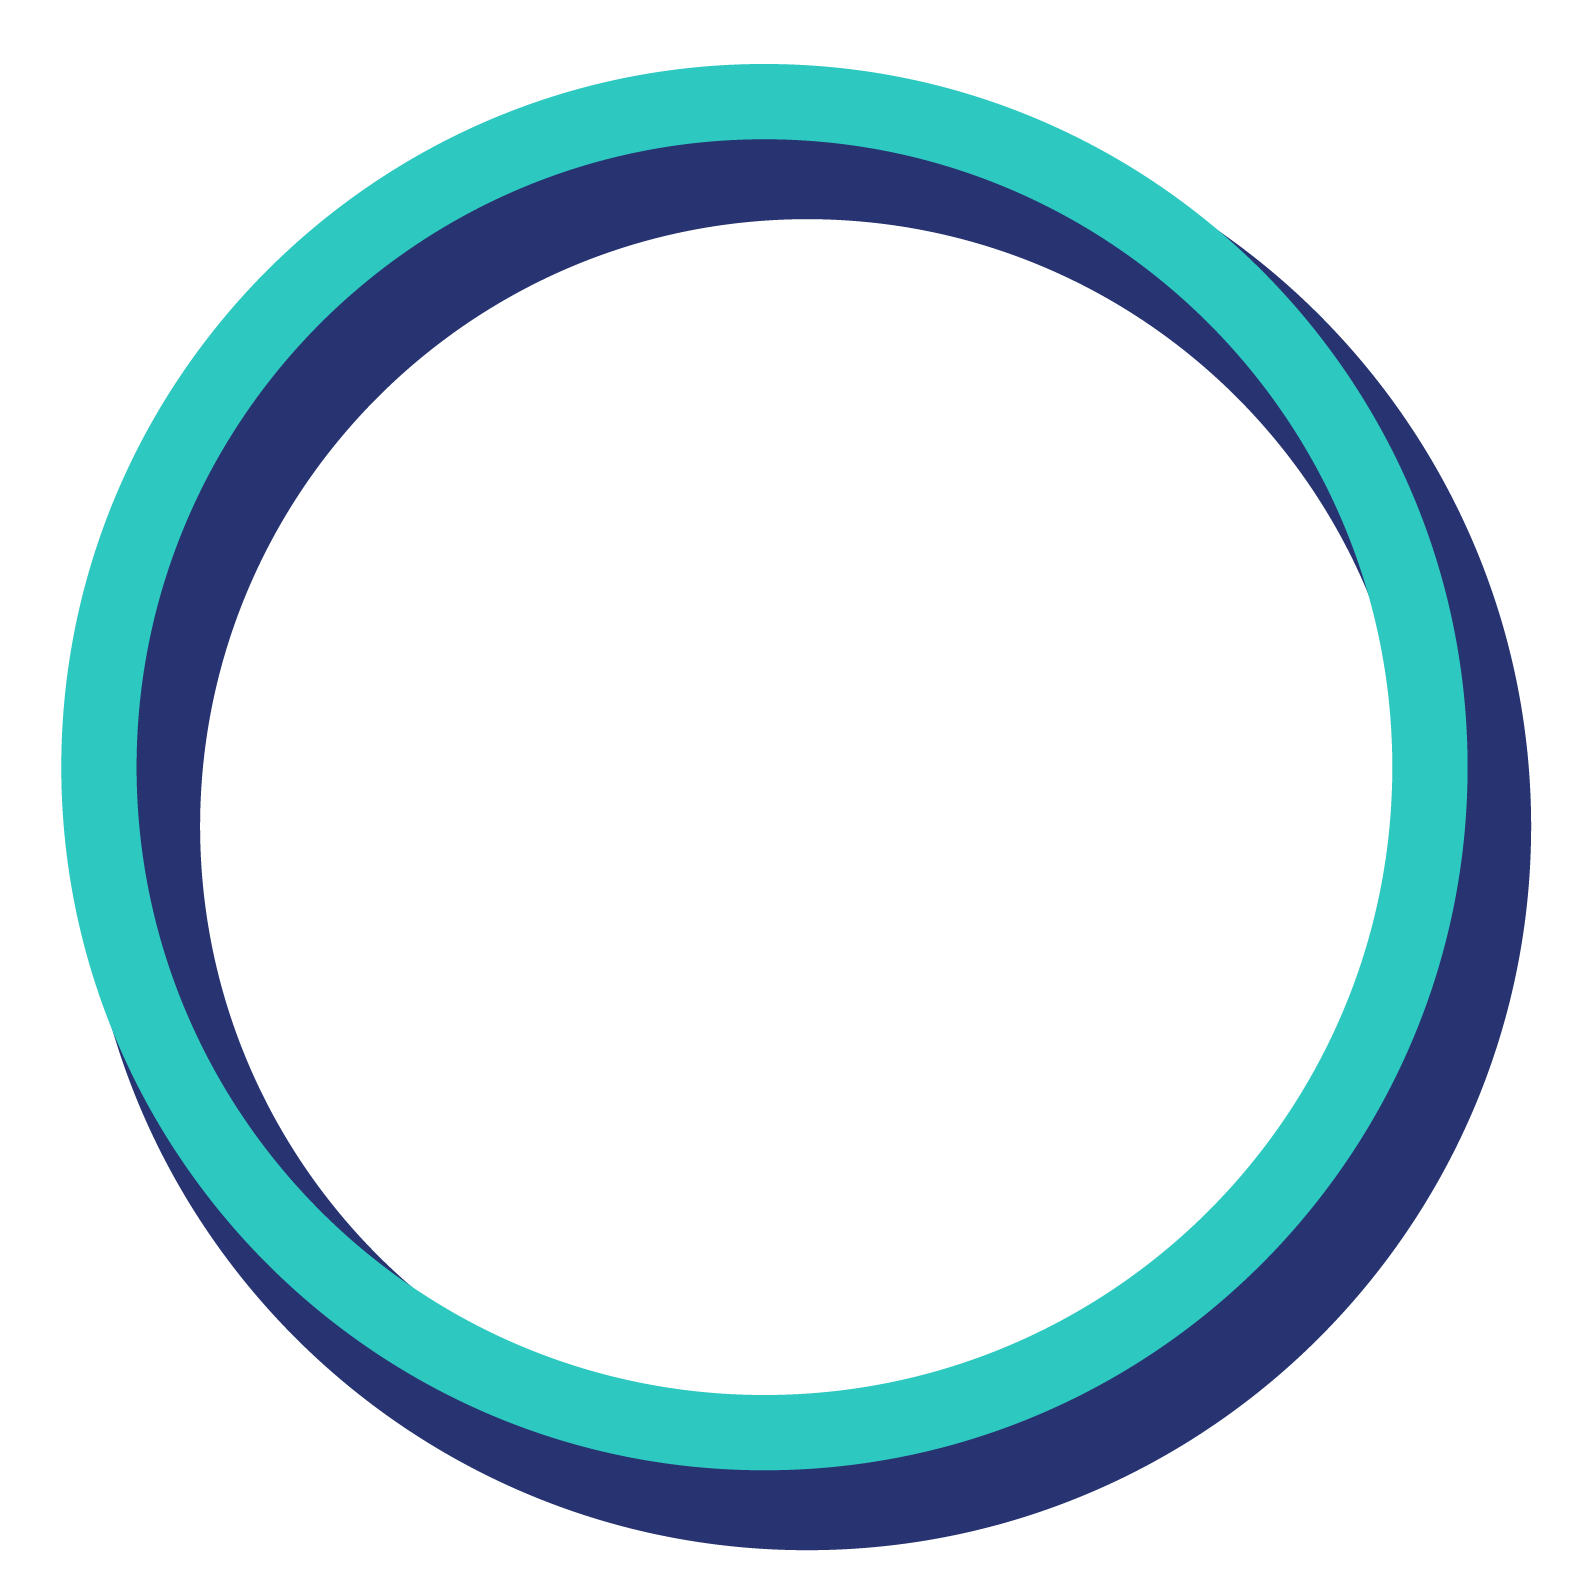 Focused in Circle Design